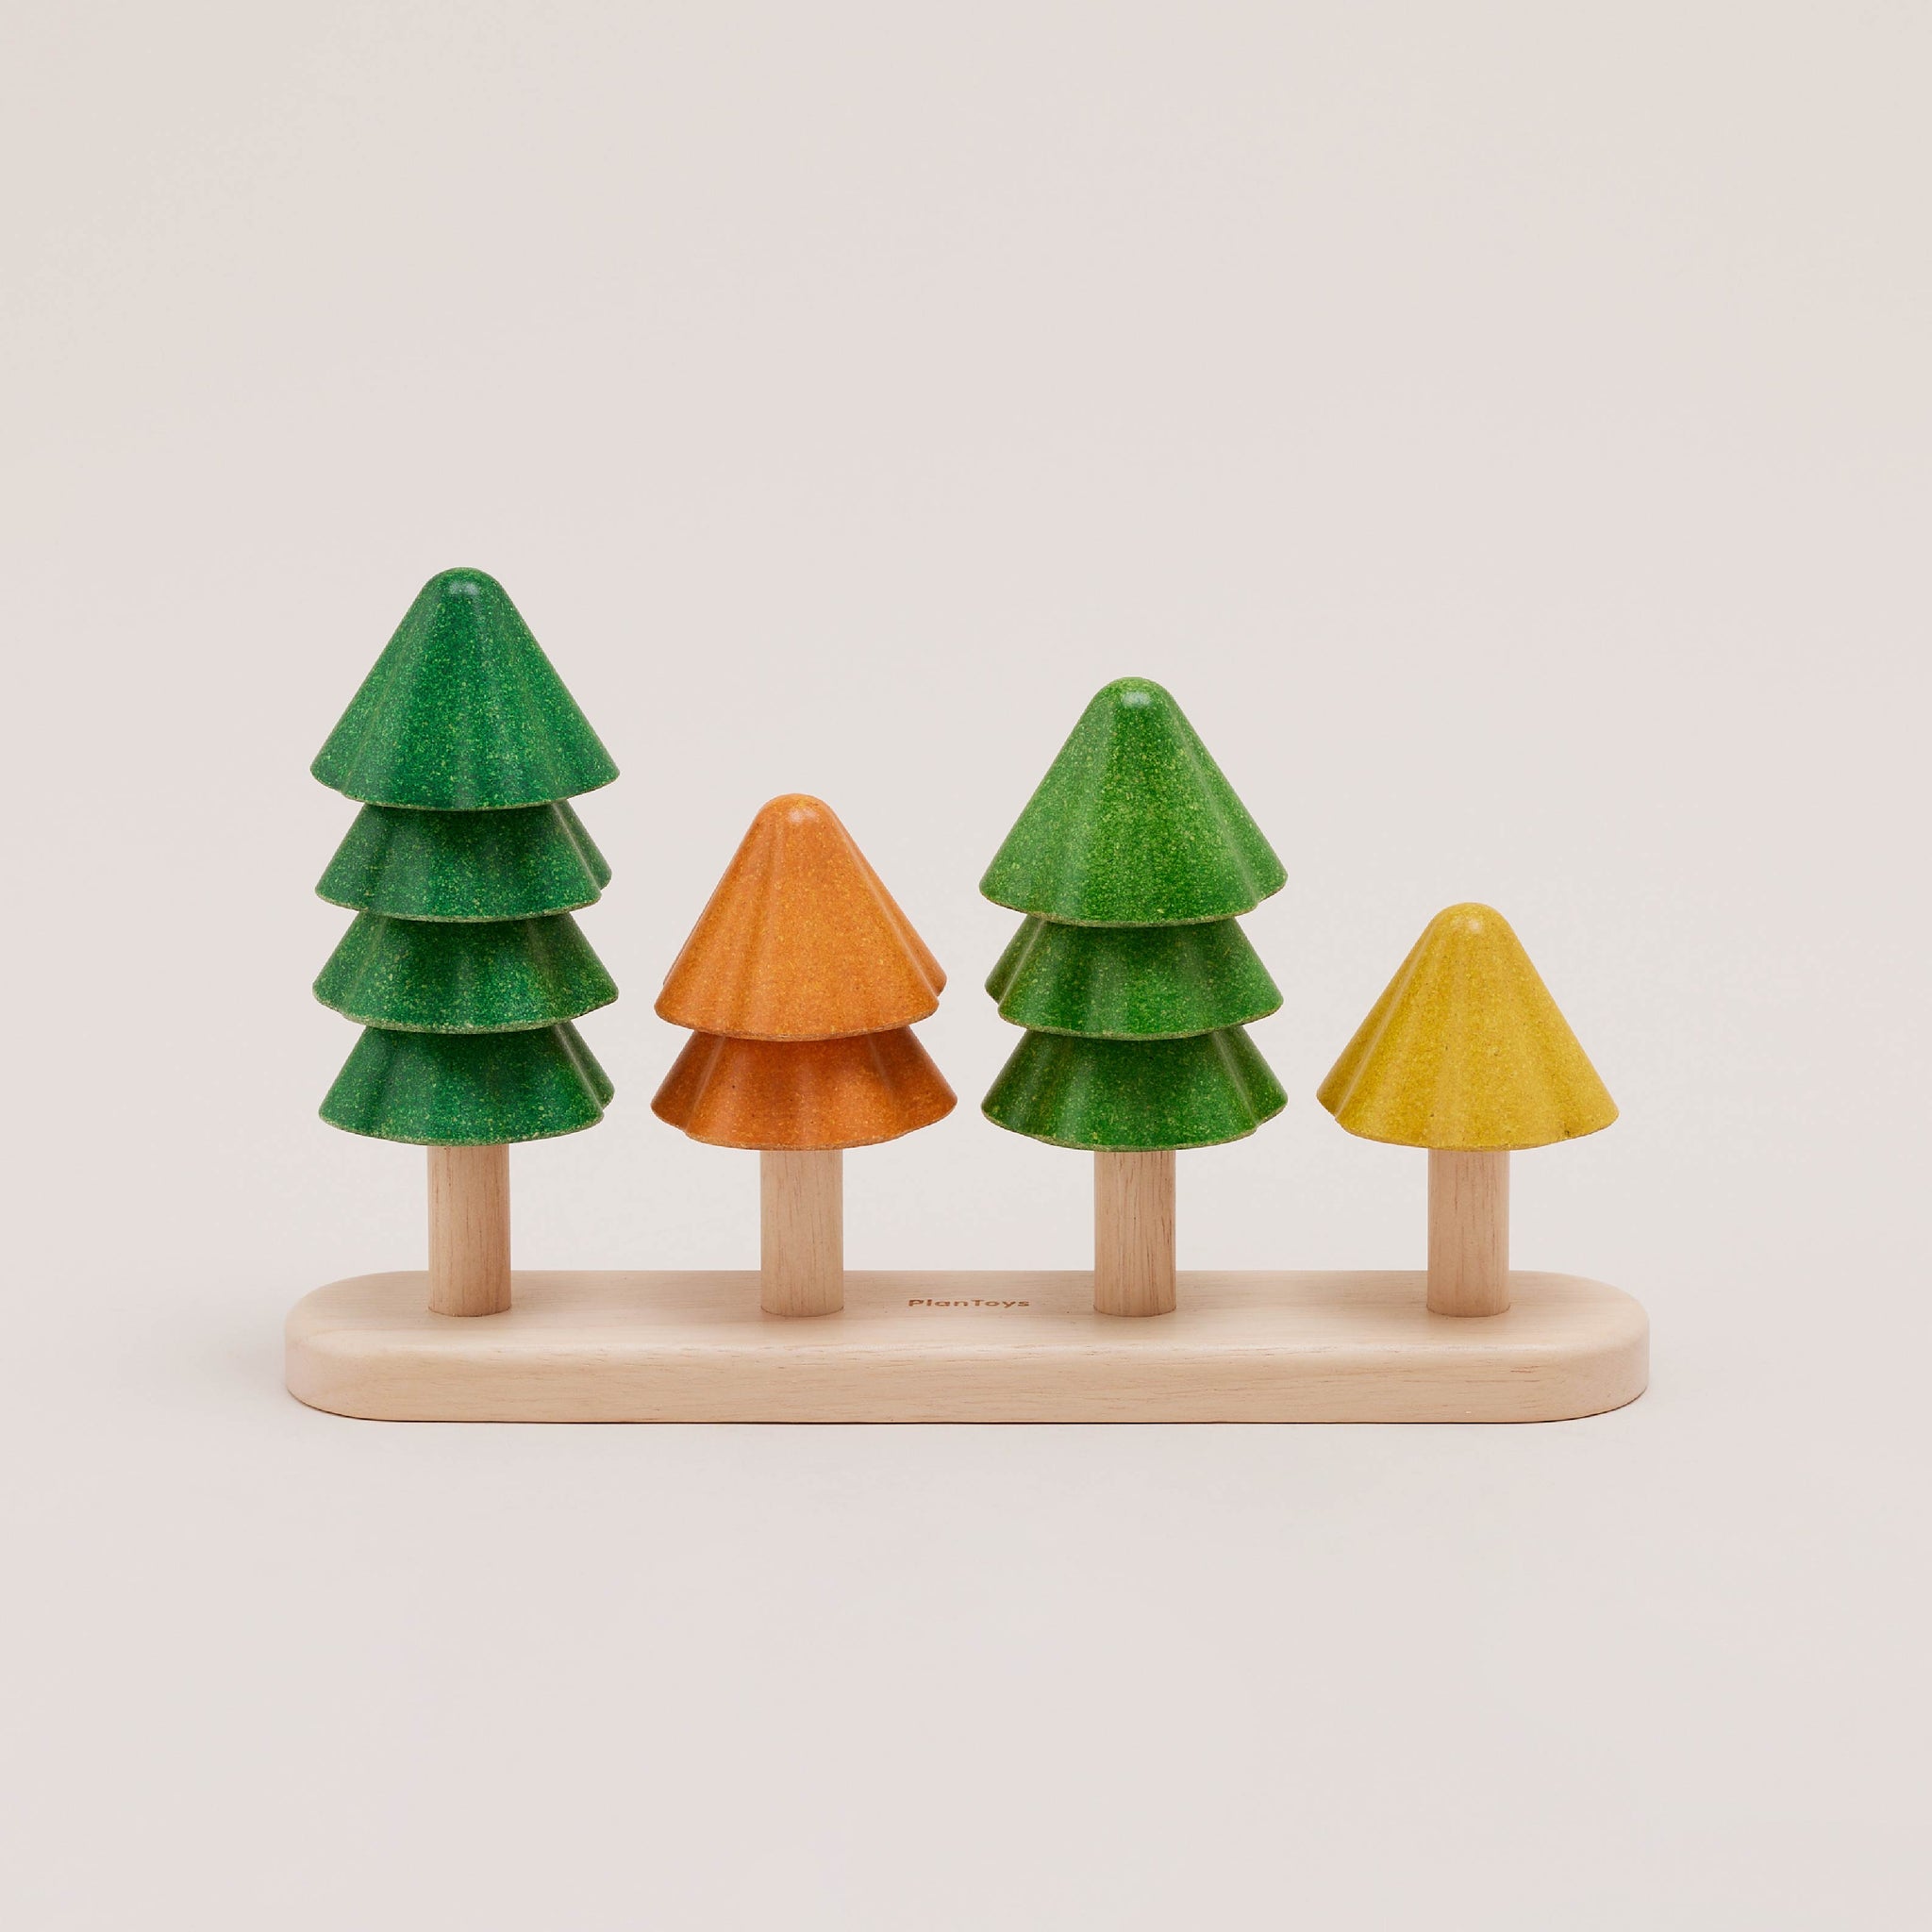 Plantoys Sort & Count Tree | ของเล่นไม้เสริมพัฒนาการ ต้นไม้แยกสี